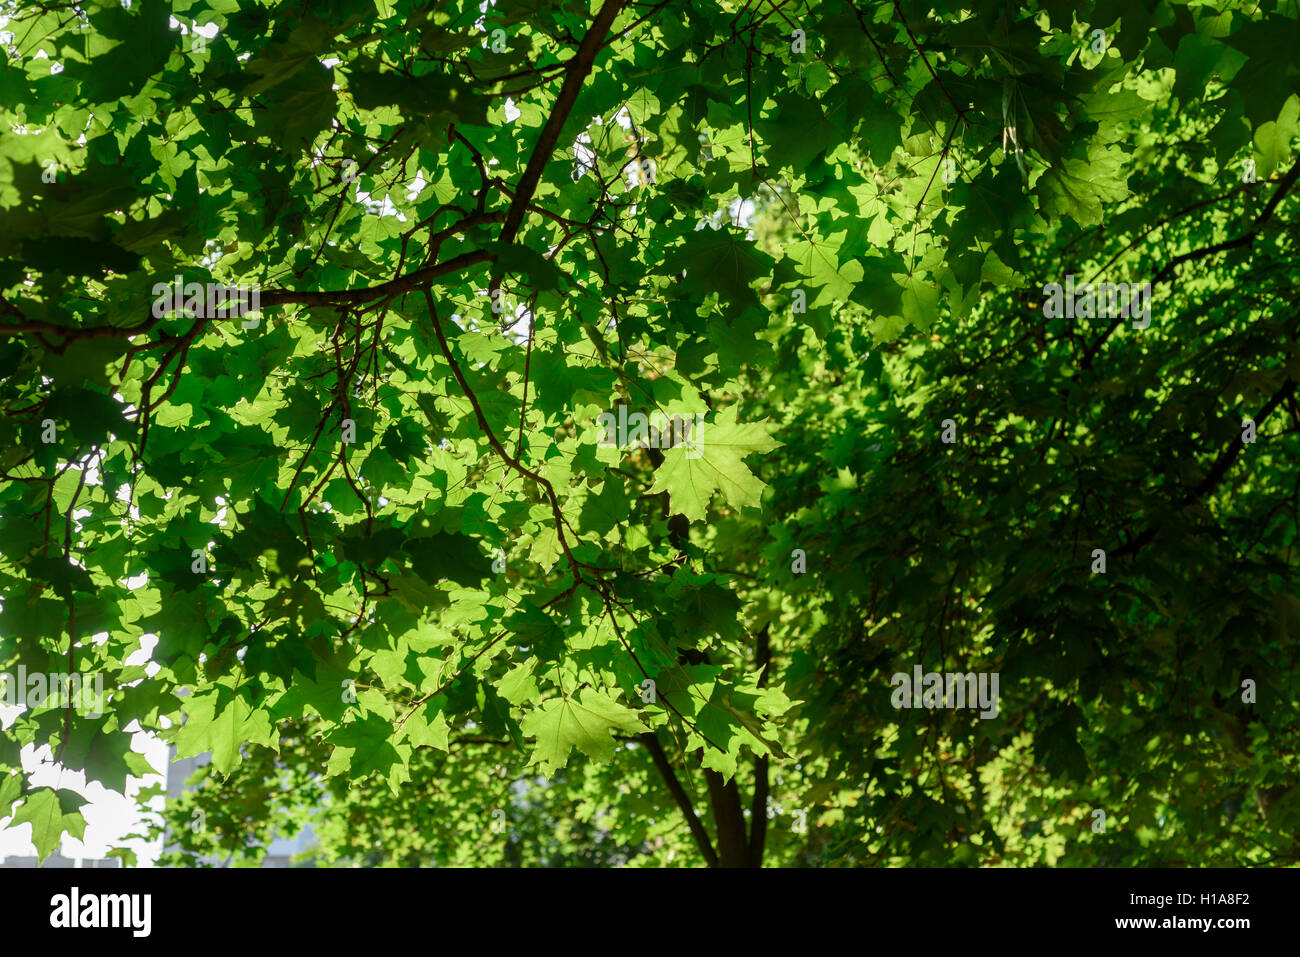 Sonnenlicht scheint, obwohl die grünen eines großen Baumes in einem Sommer Wald Blätter Stockfoto